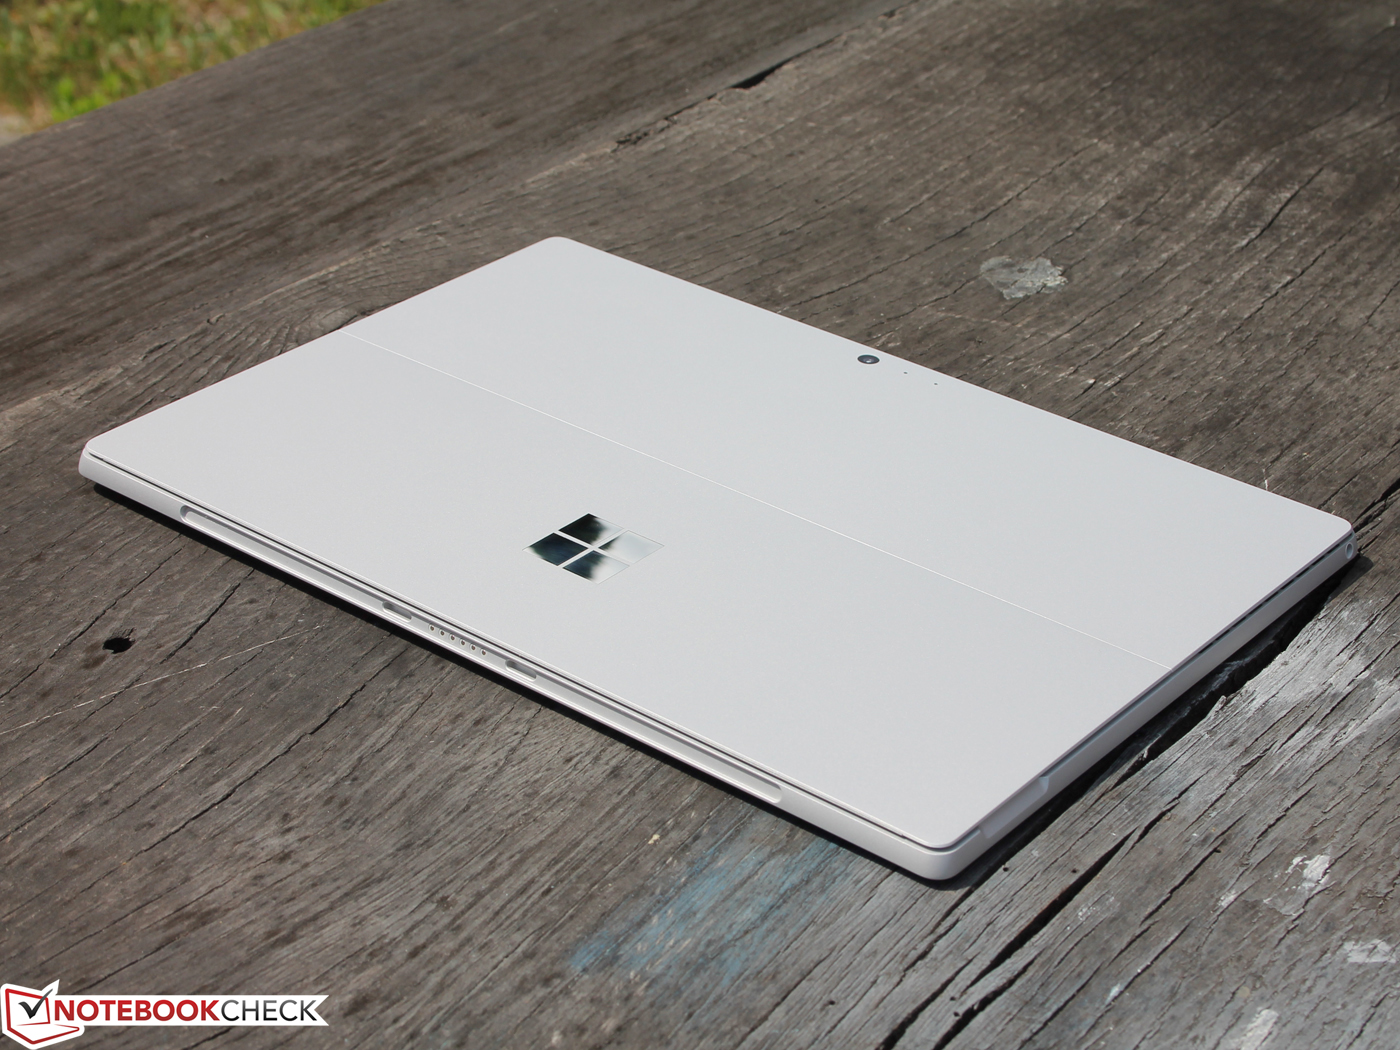 微软 Surface Pro 2017 (i5-7300U, 256 GB) 变形本简短评测 - Notebookcheck